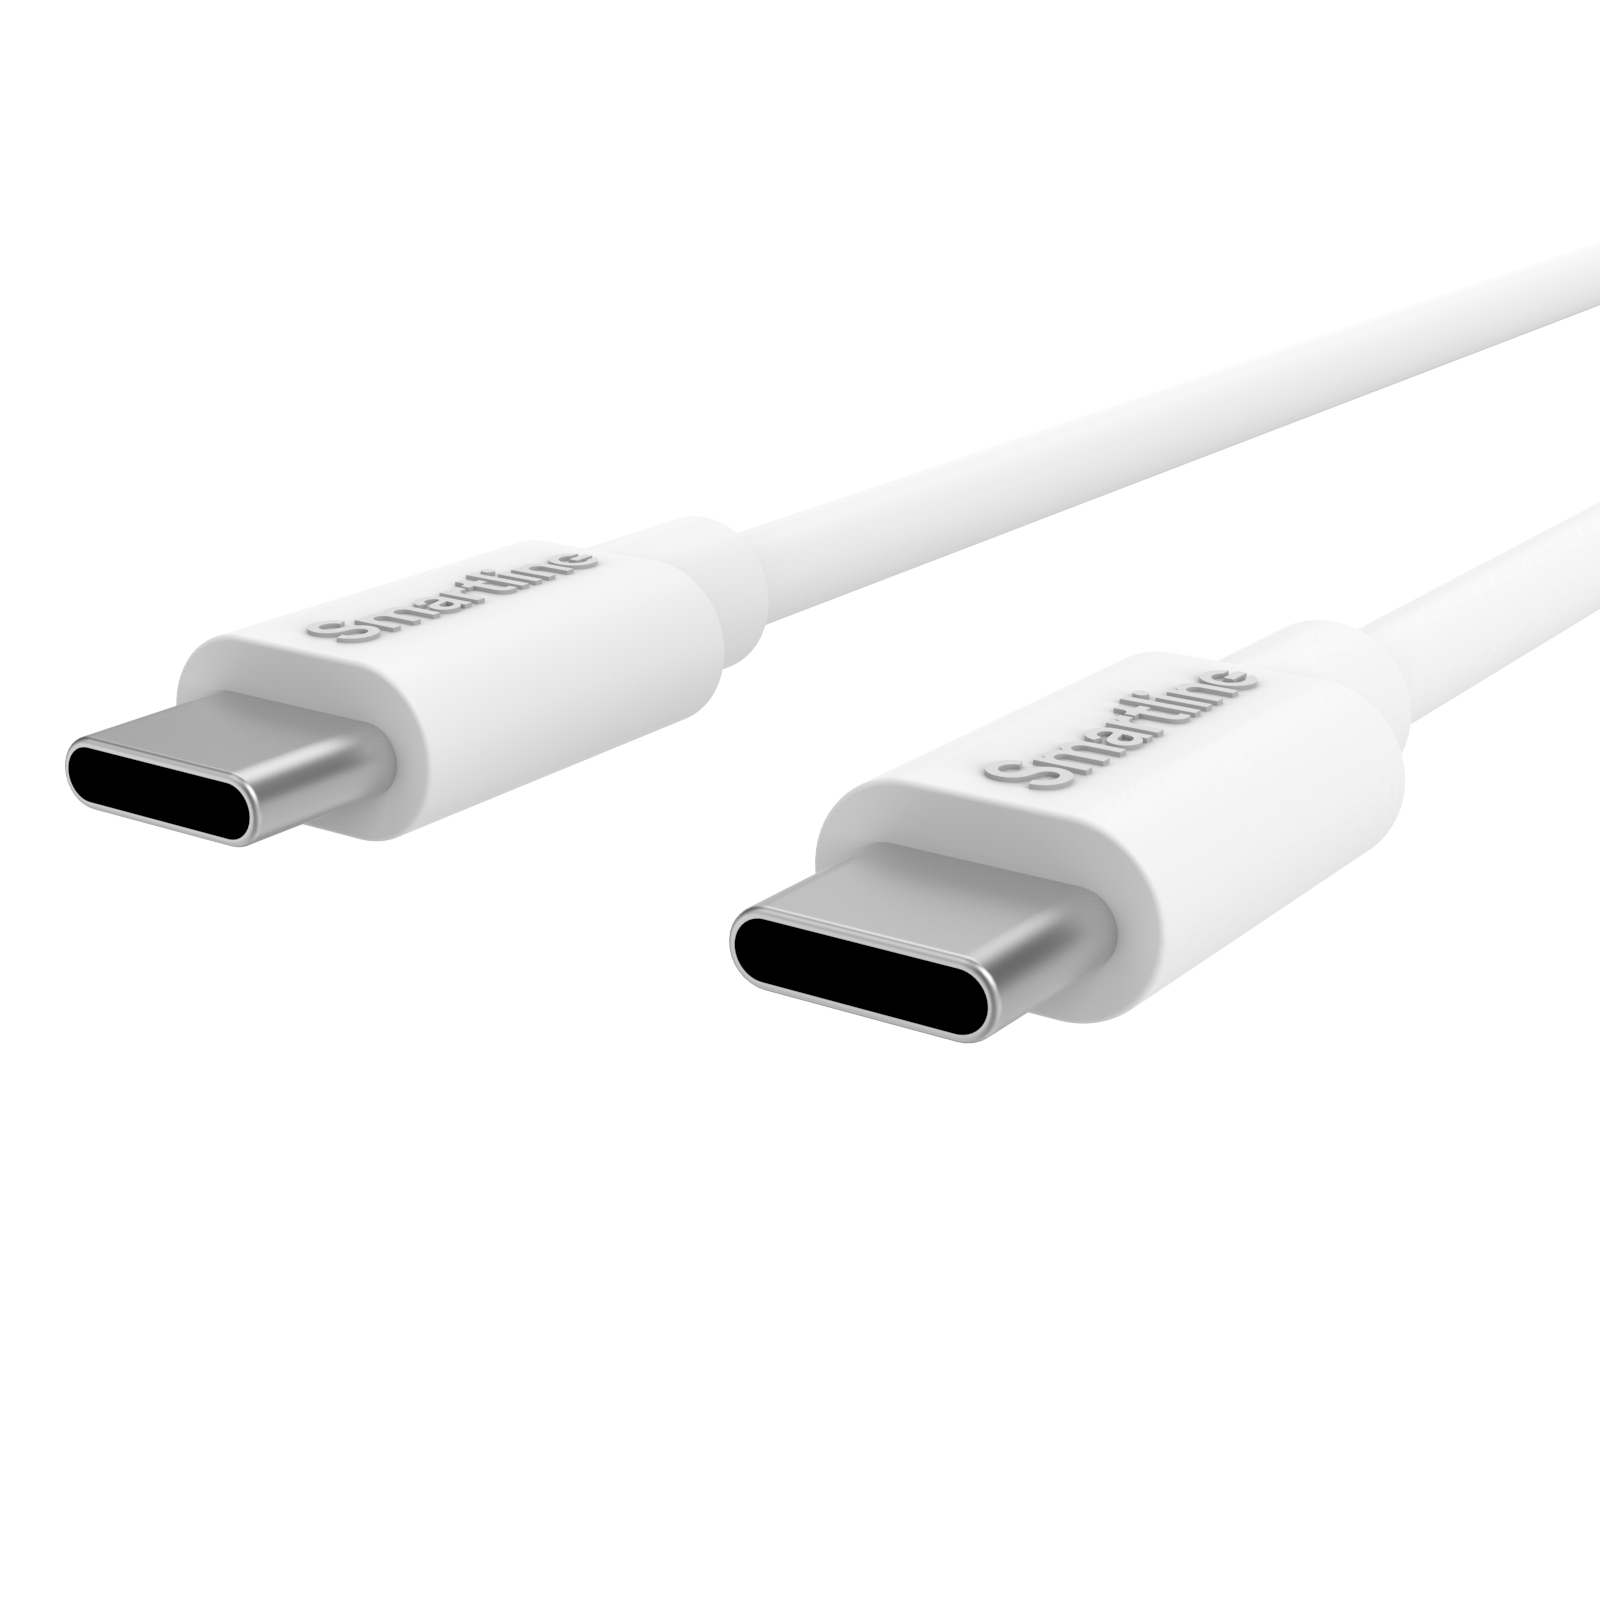 Zwei-in-eins Auto-Ladegerät - 1m-USB-C-Kabel und USB-C-Ladegerät - Smartline